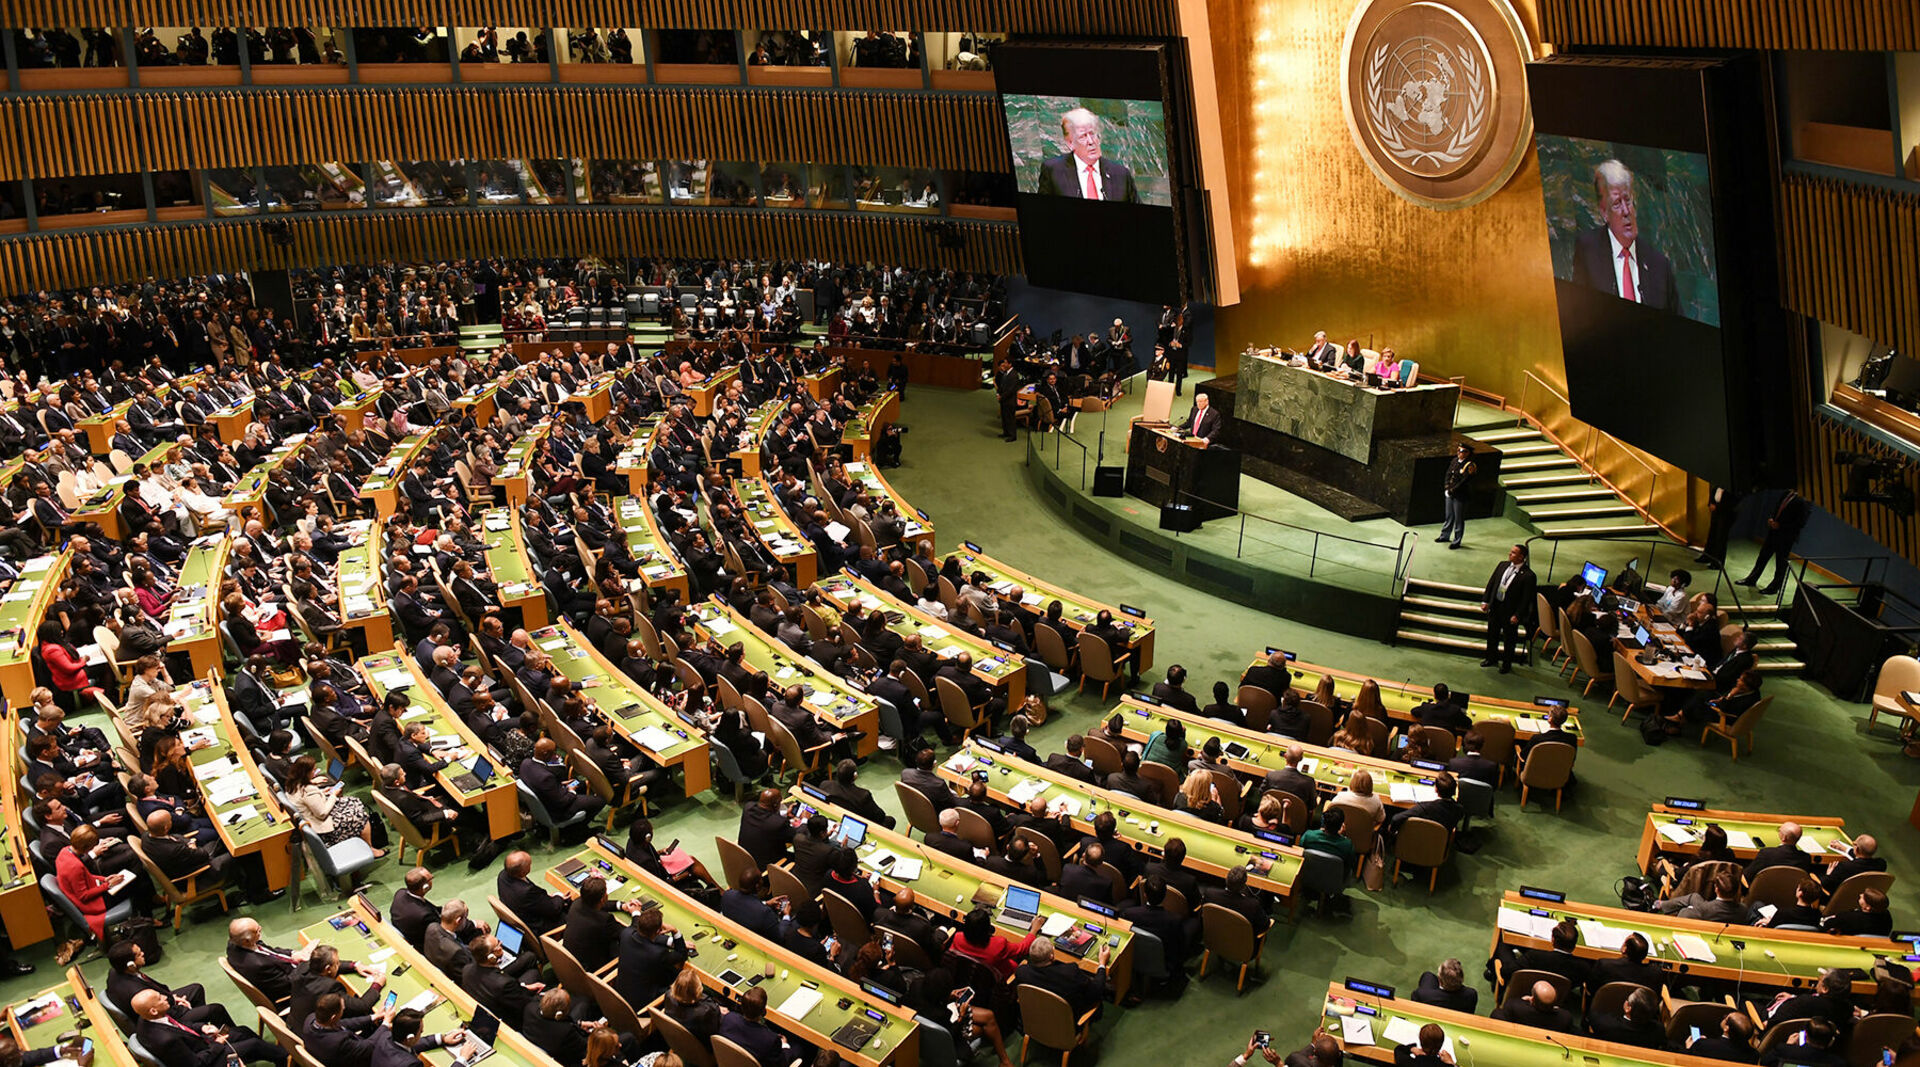 Зал оон. Зал Генеральной Ассамблеи ООН. Зал заседания Генеральной Ассамблеи ООН. 79 Генеральная Ассамблея ООН. Зал заседаний Генассамблеи ООН.